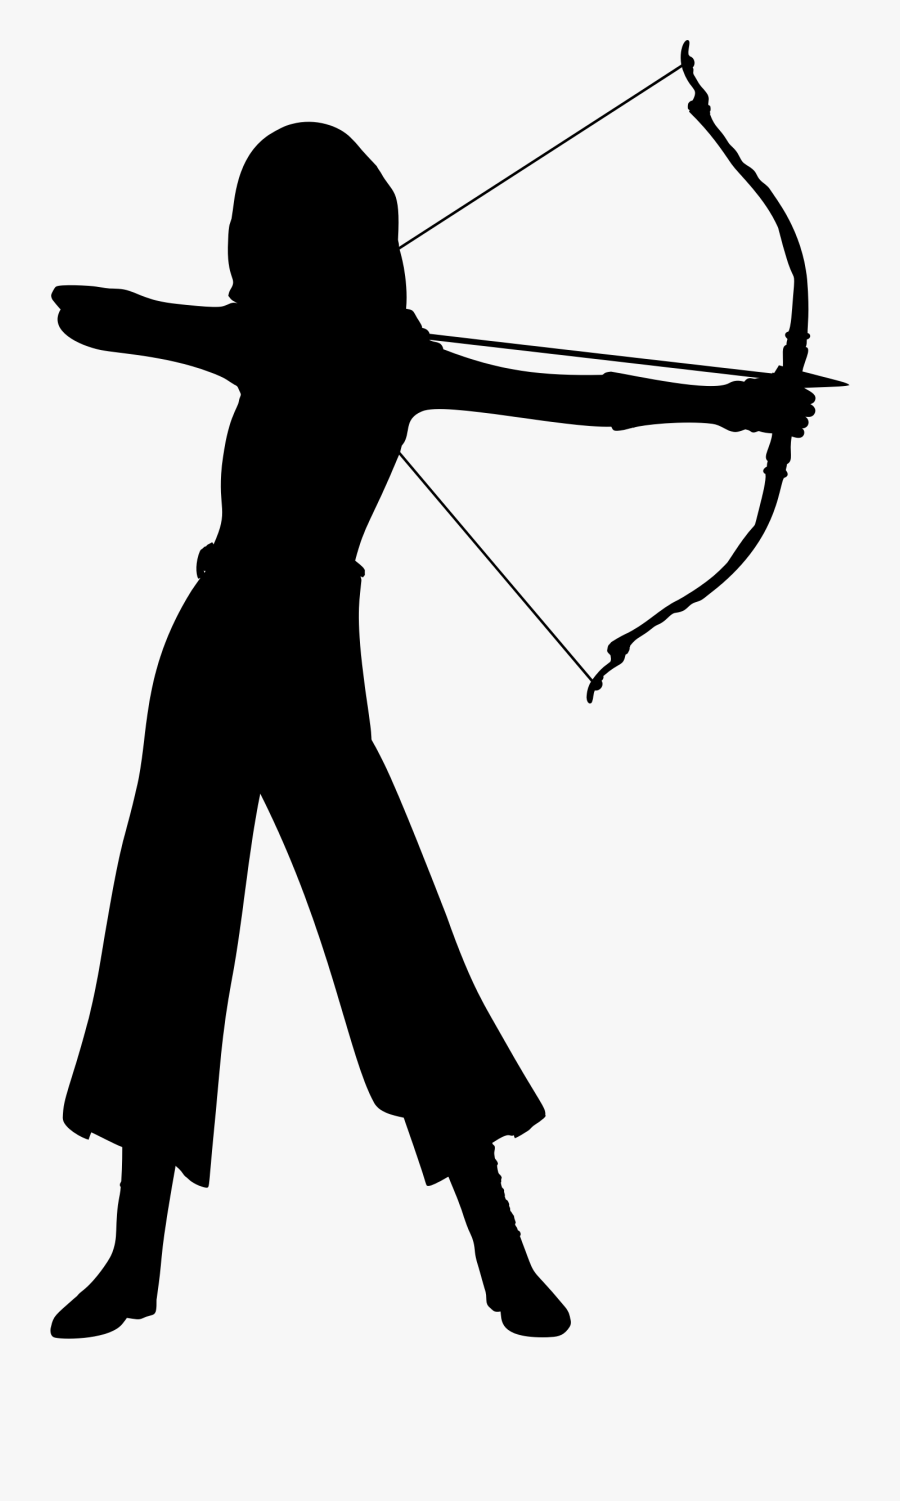 Transparent Bow And Arrow Clip Art - Woman Archer Silhouette Png, Transparent Clipart